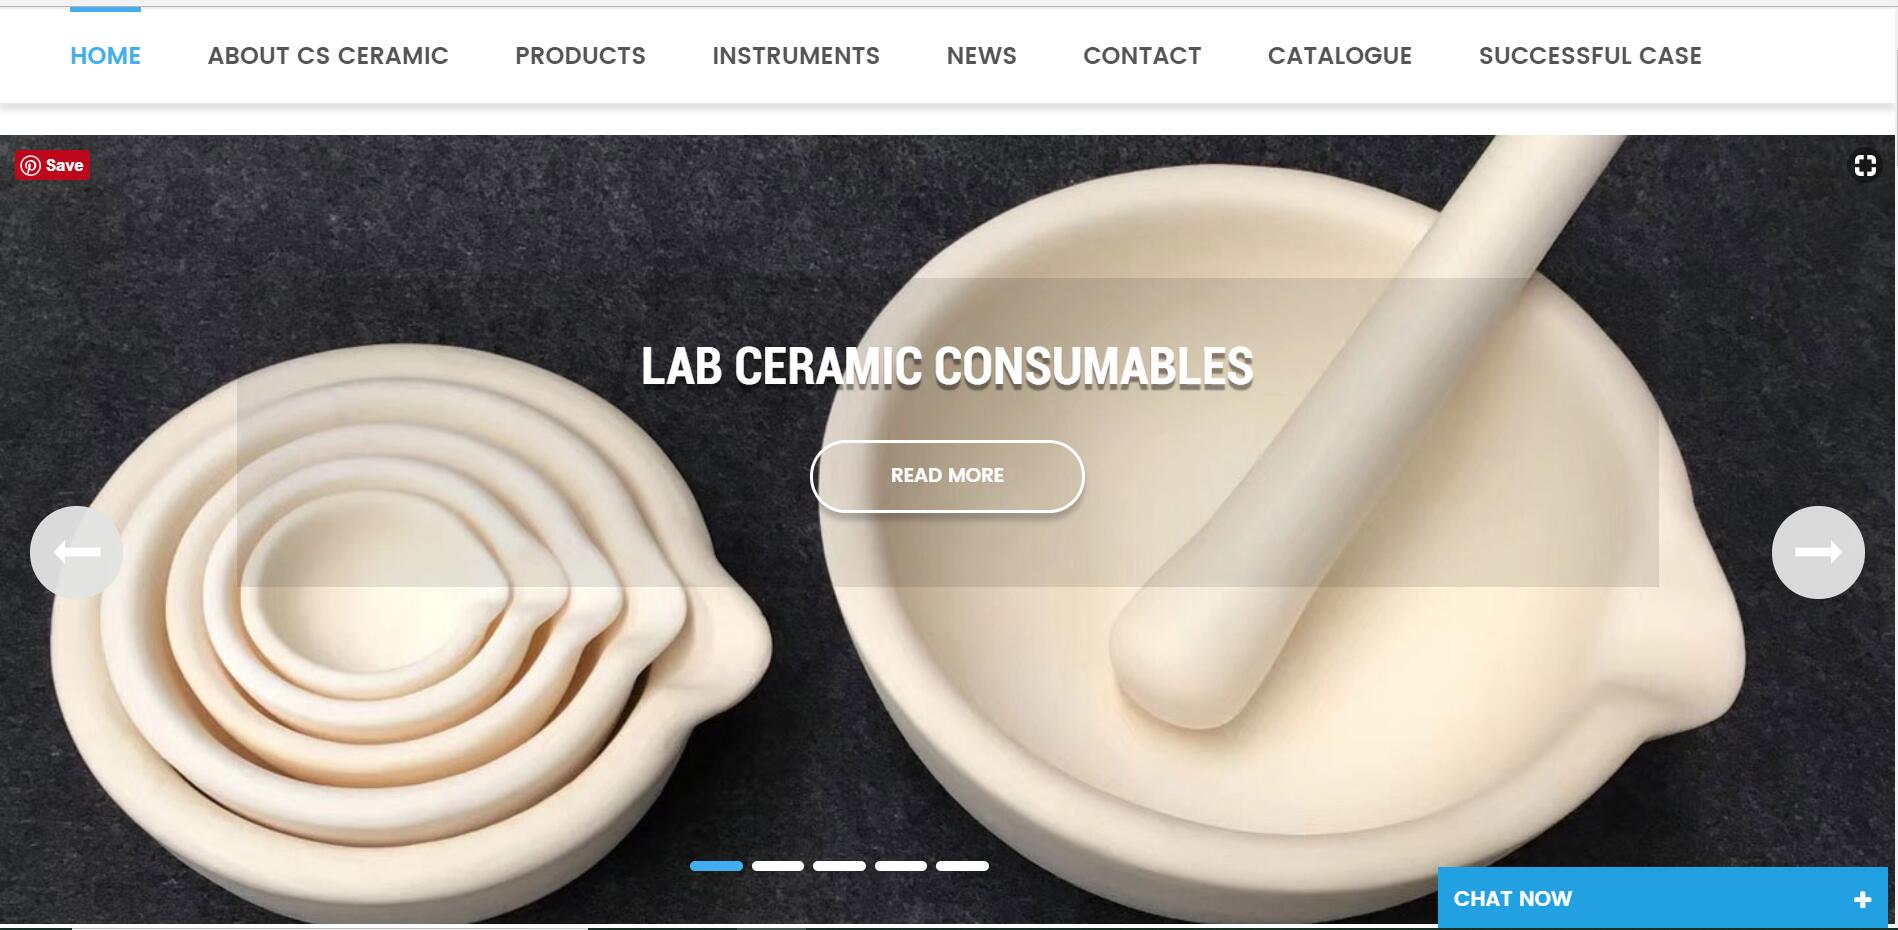 Site-ul oficial CS ceramic are acum zece tipuri de interfețe lingvistice